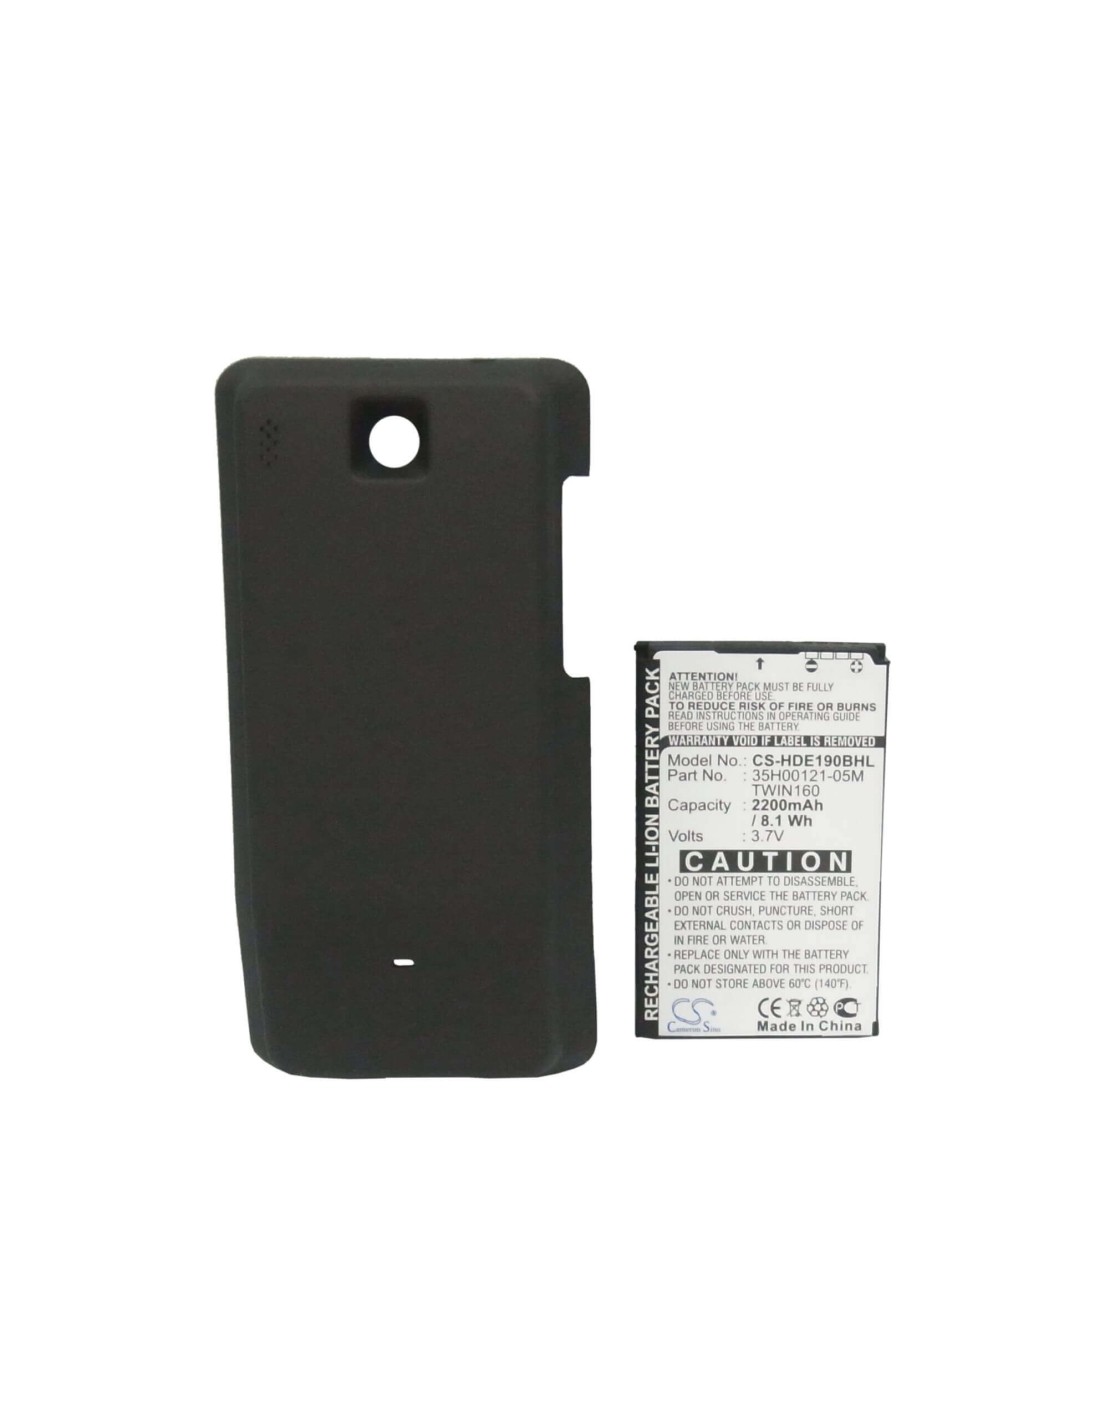 Battery for HTC Hero, Hero 100, Hero 130, black back cover 3.7V, 2200mAh - 8.14Wh